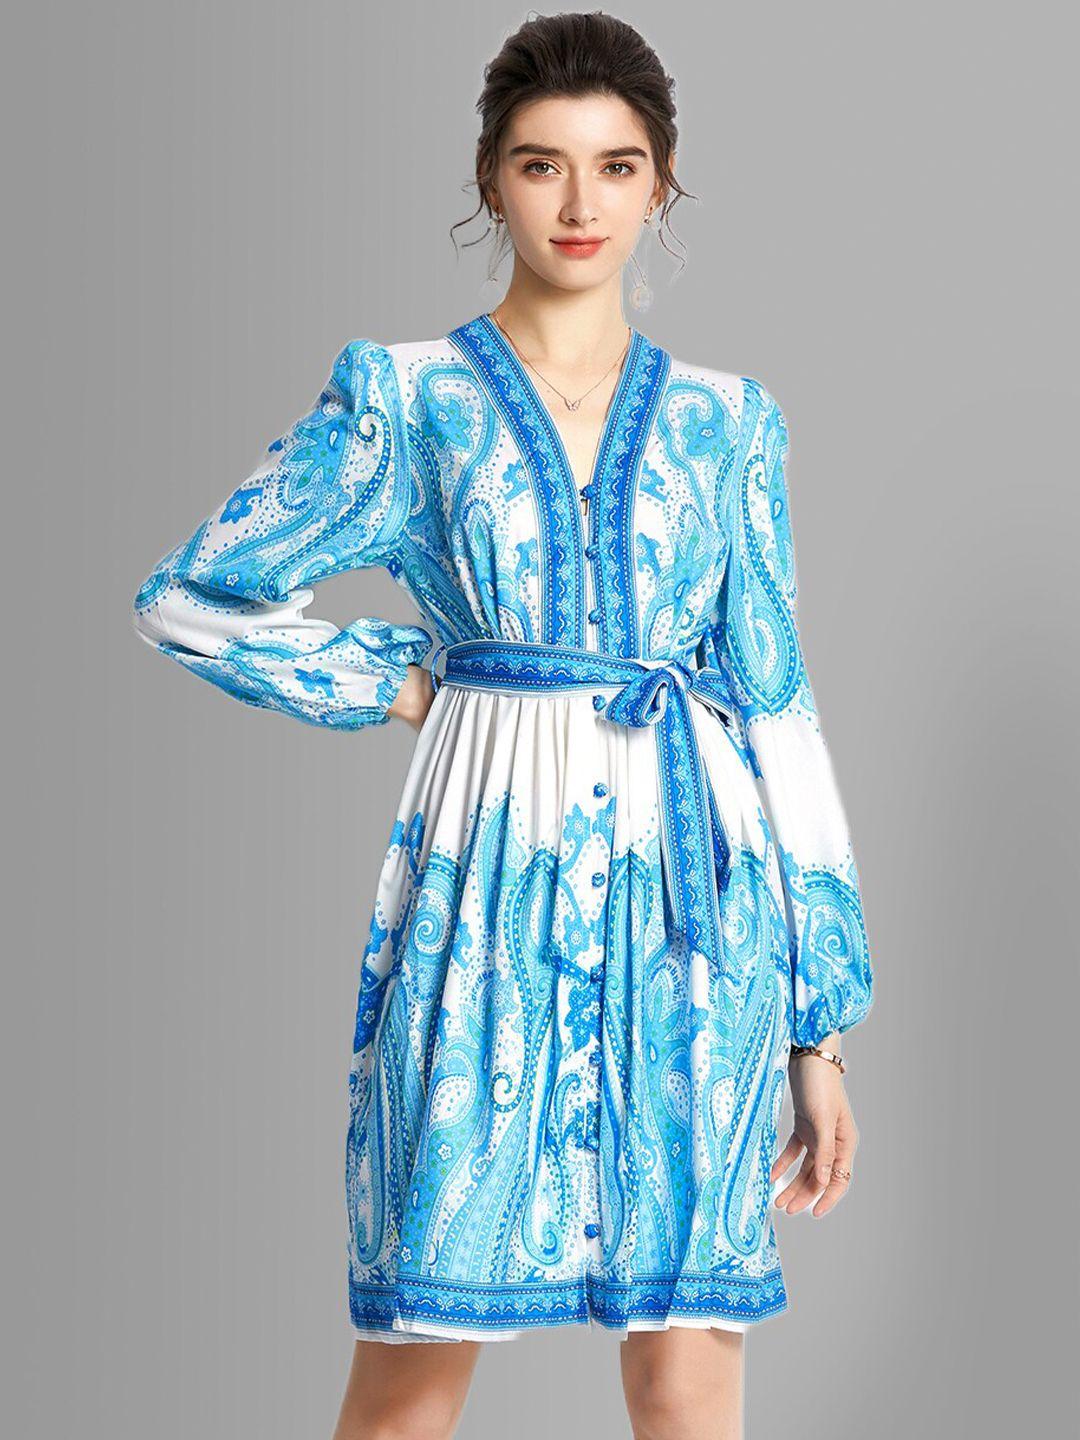 jc collection blue bohemian dress